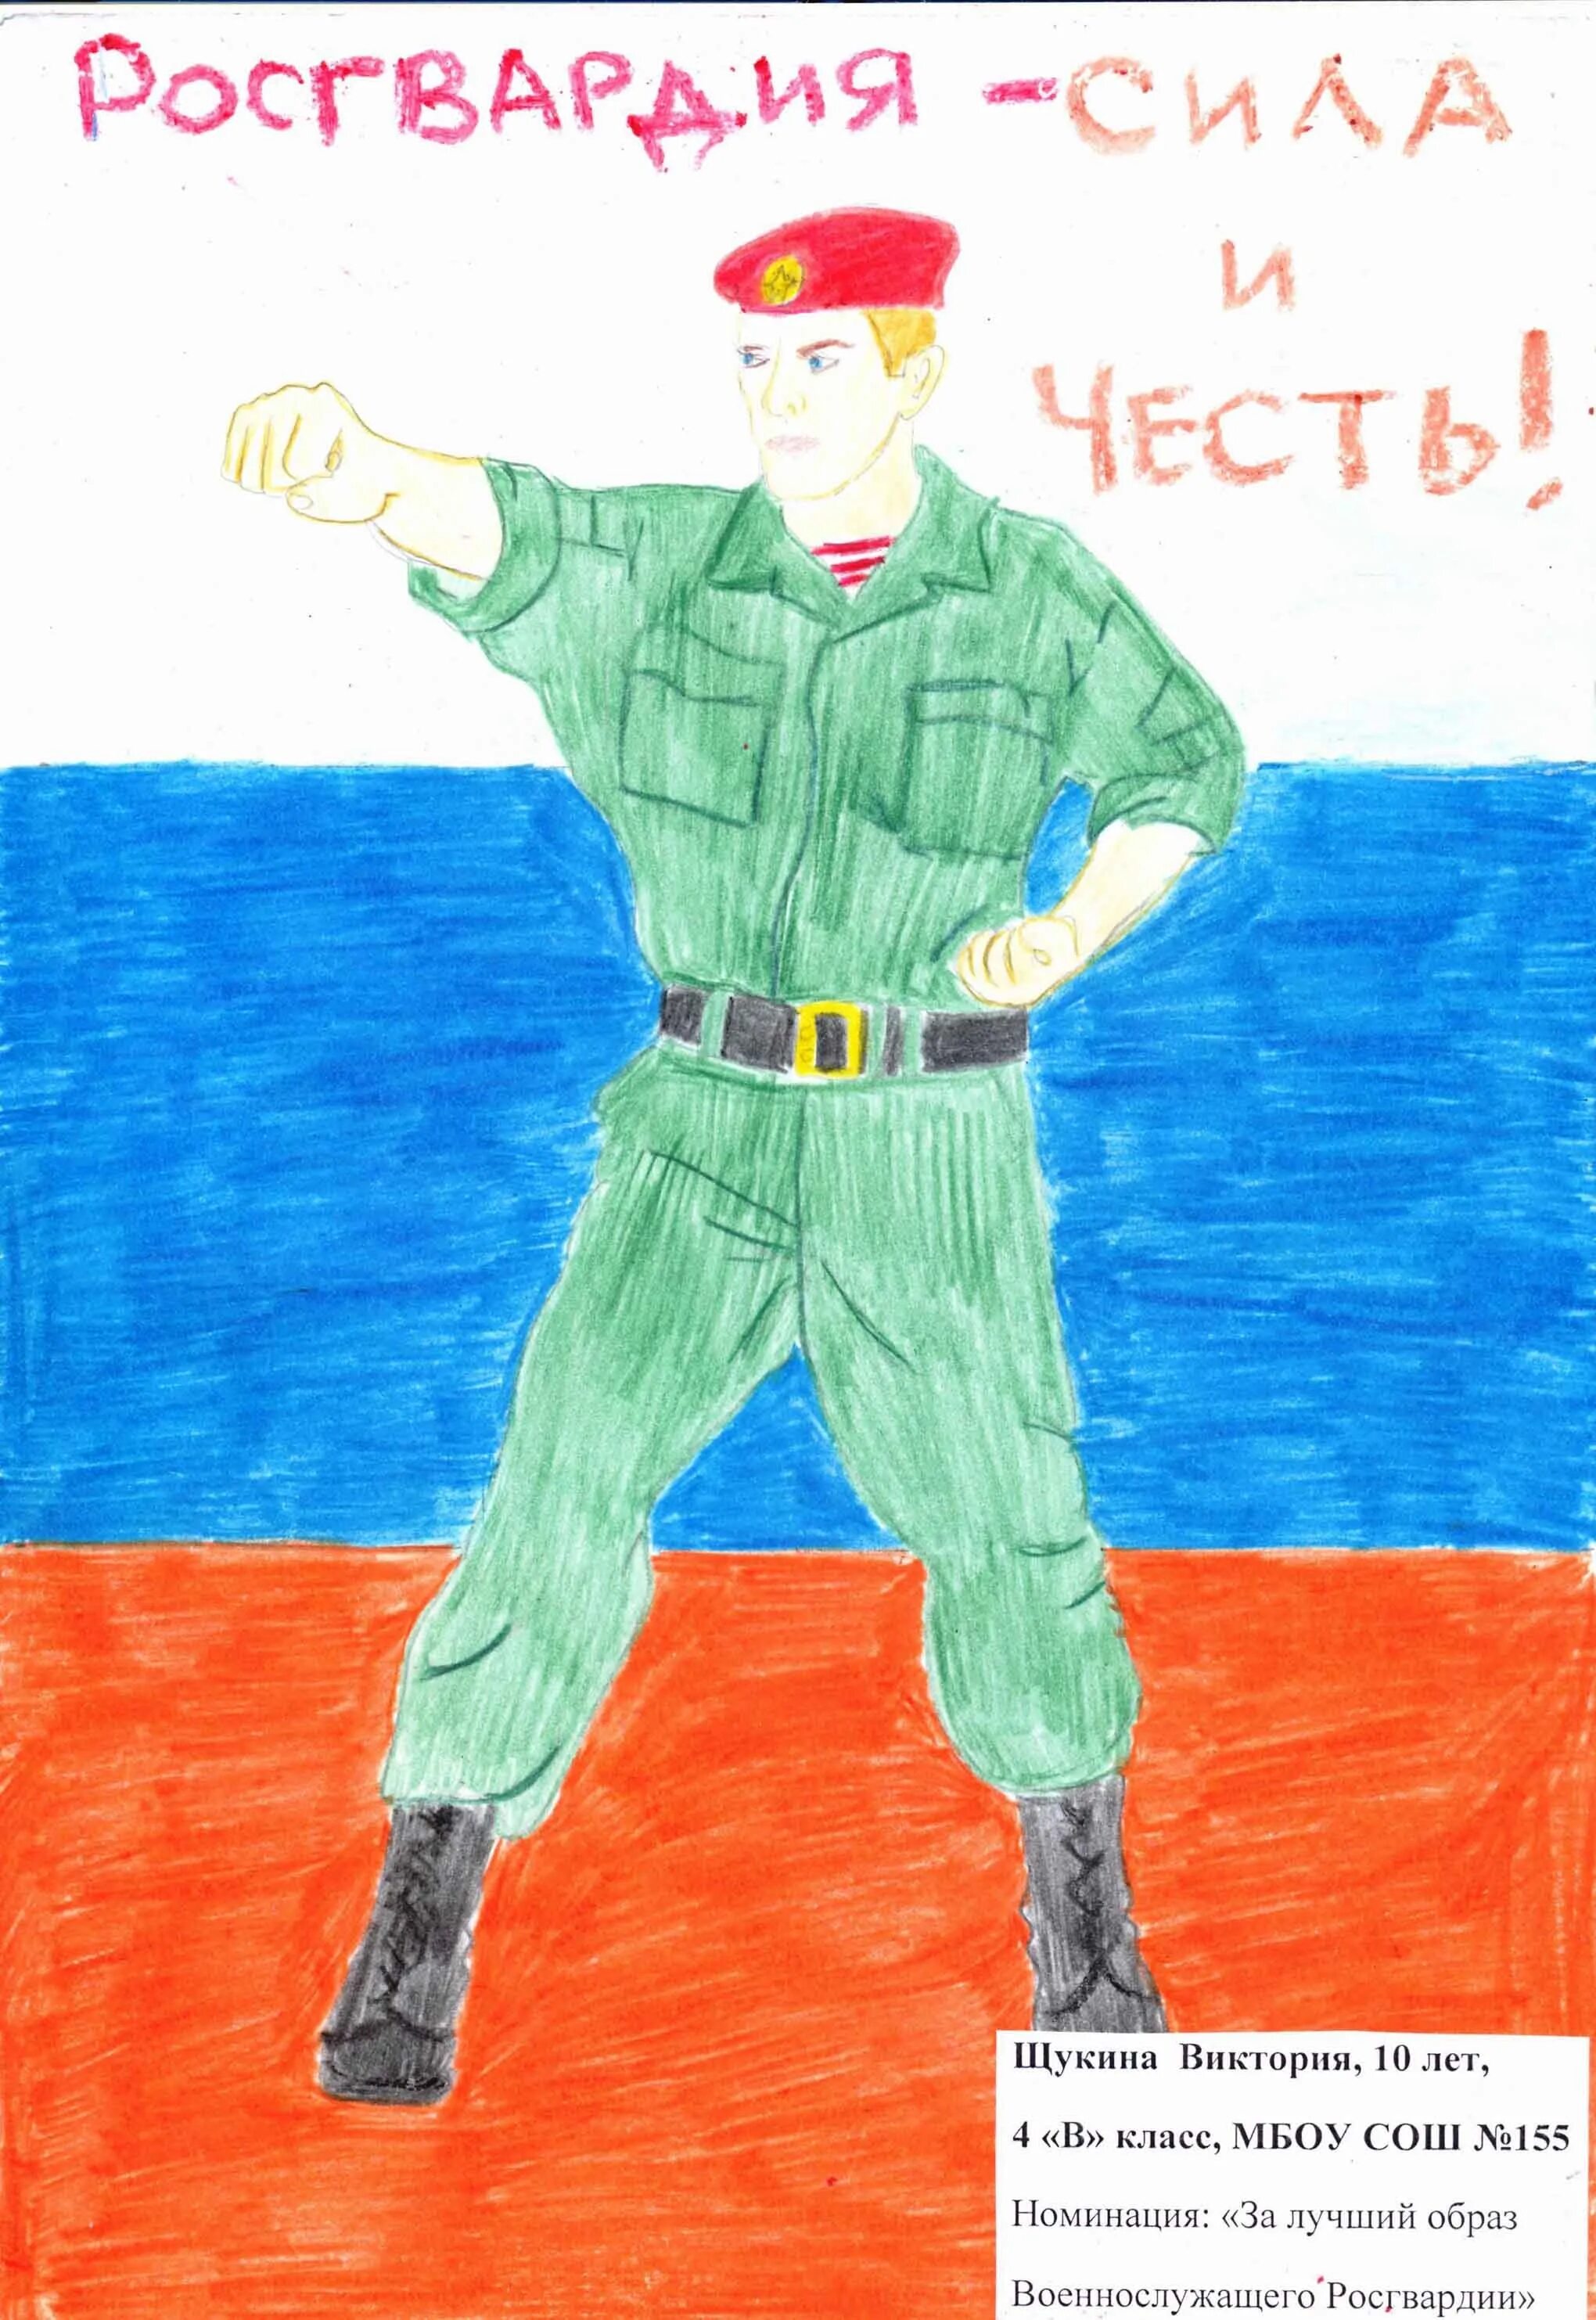 Russian Guard #2